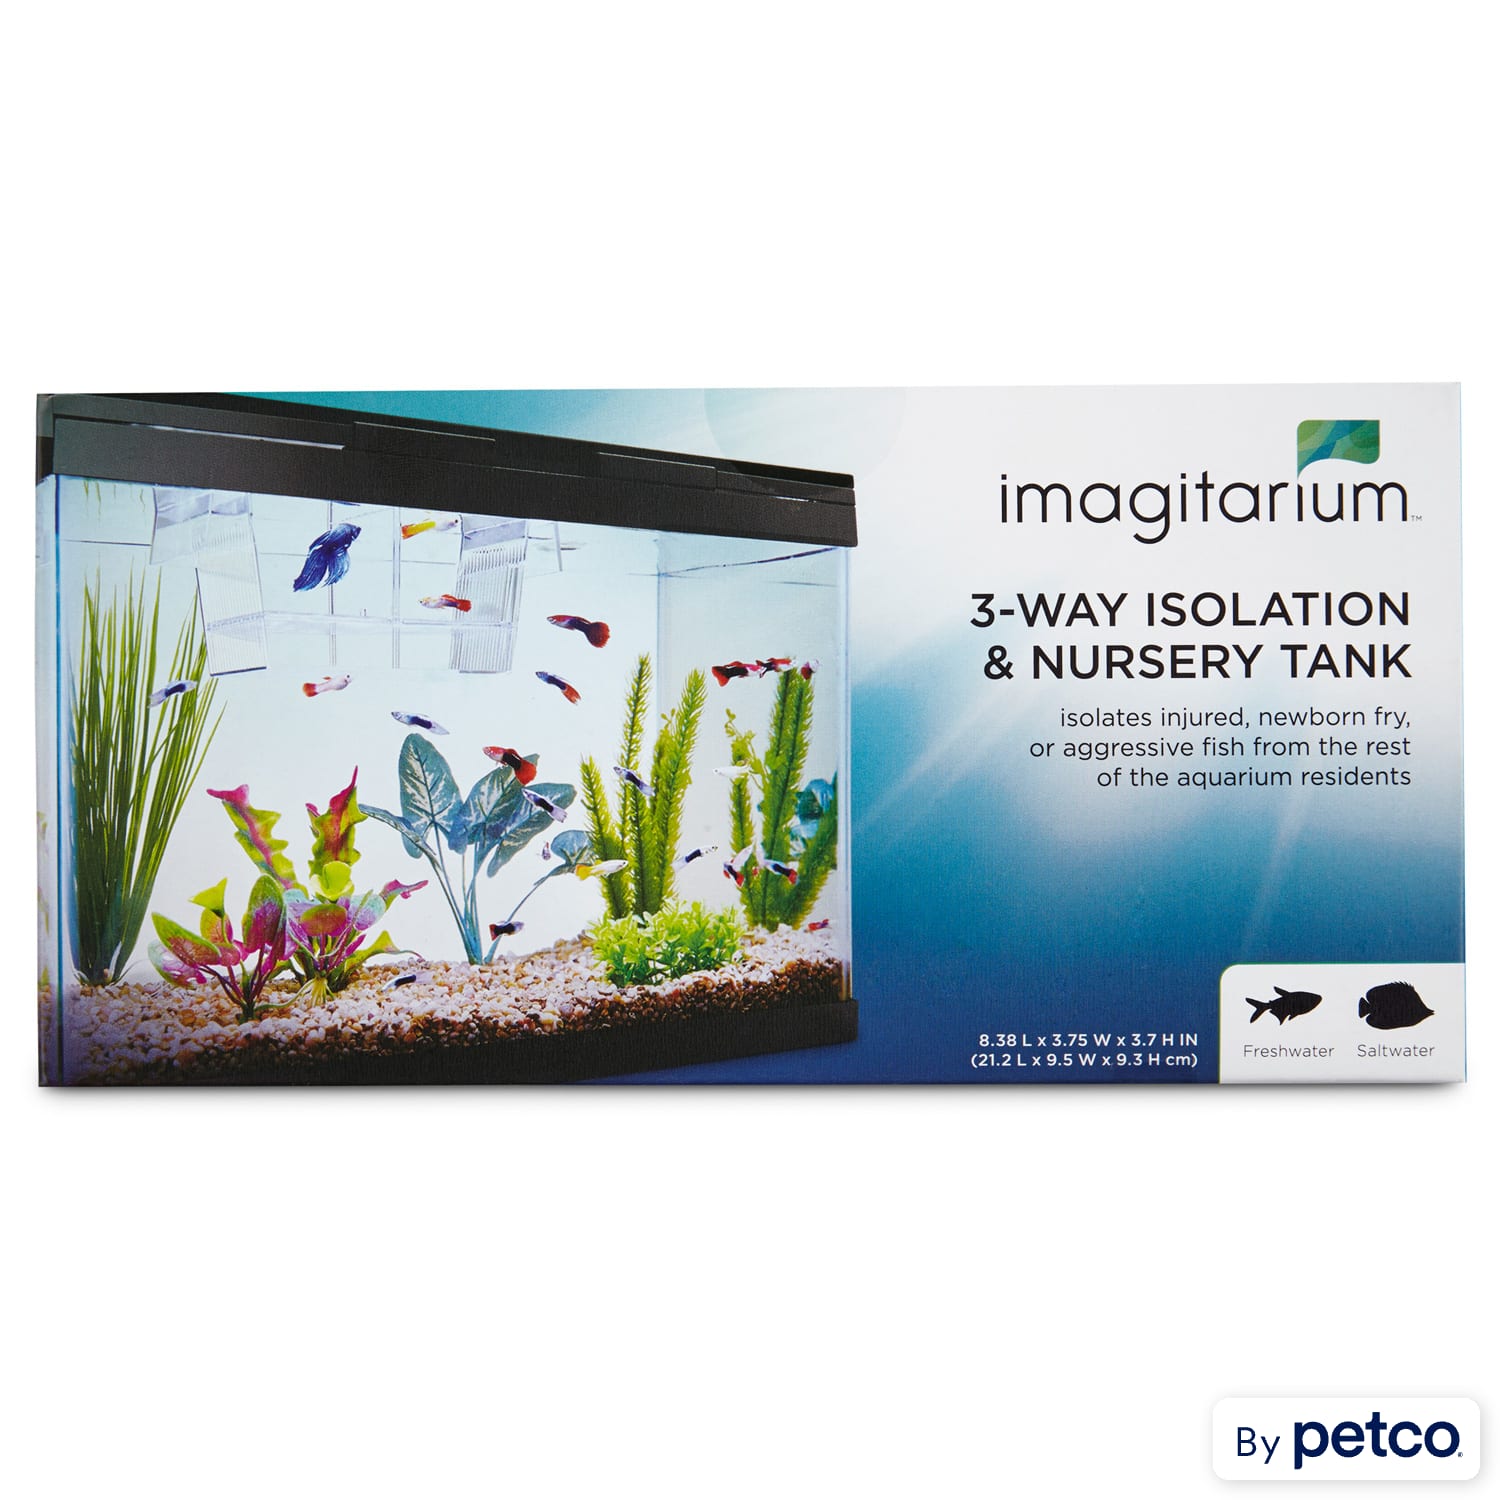 Imagitarium Isolation & Breeder Fish Tank, 8.4 L X 3.7 H X 3.7 Diameter